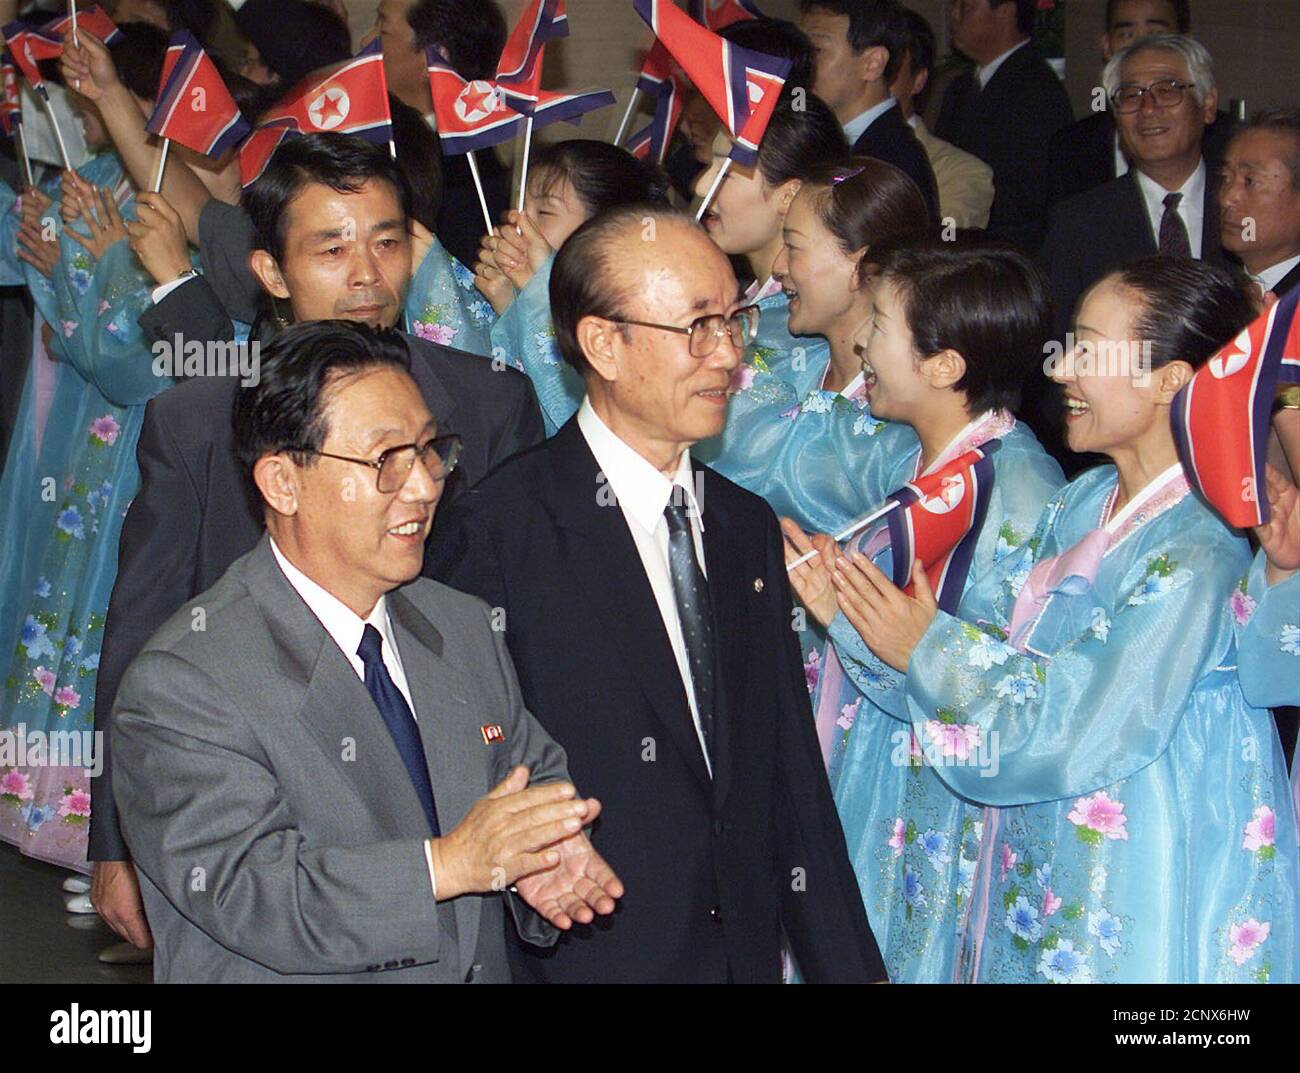 Jong Thae-hwa (L), el principal negociador de Corea del Norte, está dirigido por so Man-sul (C), presidente interino de la Asociación General pro-Pyongyang de residentes coreanos en Japón, es recibido por los habitantes de la bandera norcoreana mientras visita la sede en Tokio el 23 de agosto de 2000. Los negociadores japoneses y norcoreanos prometieron el martes tratar de establecer lazos diplomáticos, pero las esperanzas de un avance se veían débiles mientras los enemigos de largo plazo se aferraban a posiciones arraigadas en cuestiones clave. TA/PB Foto de stock